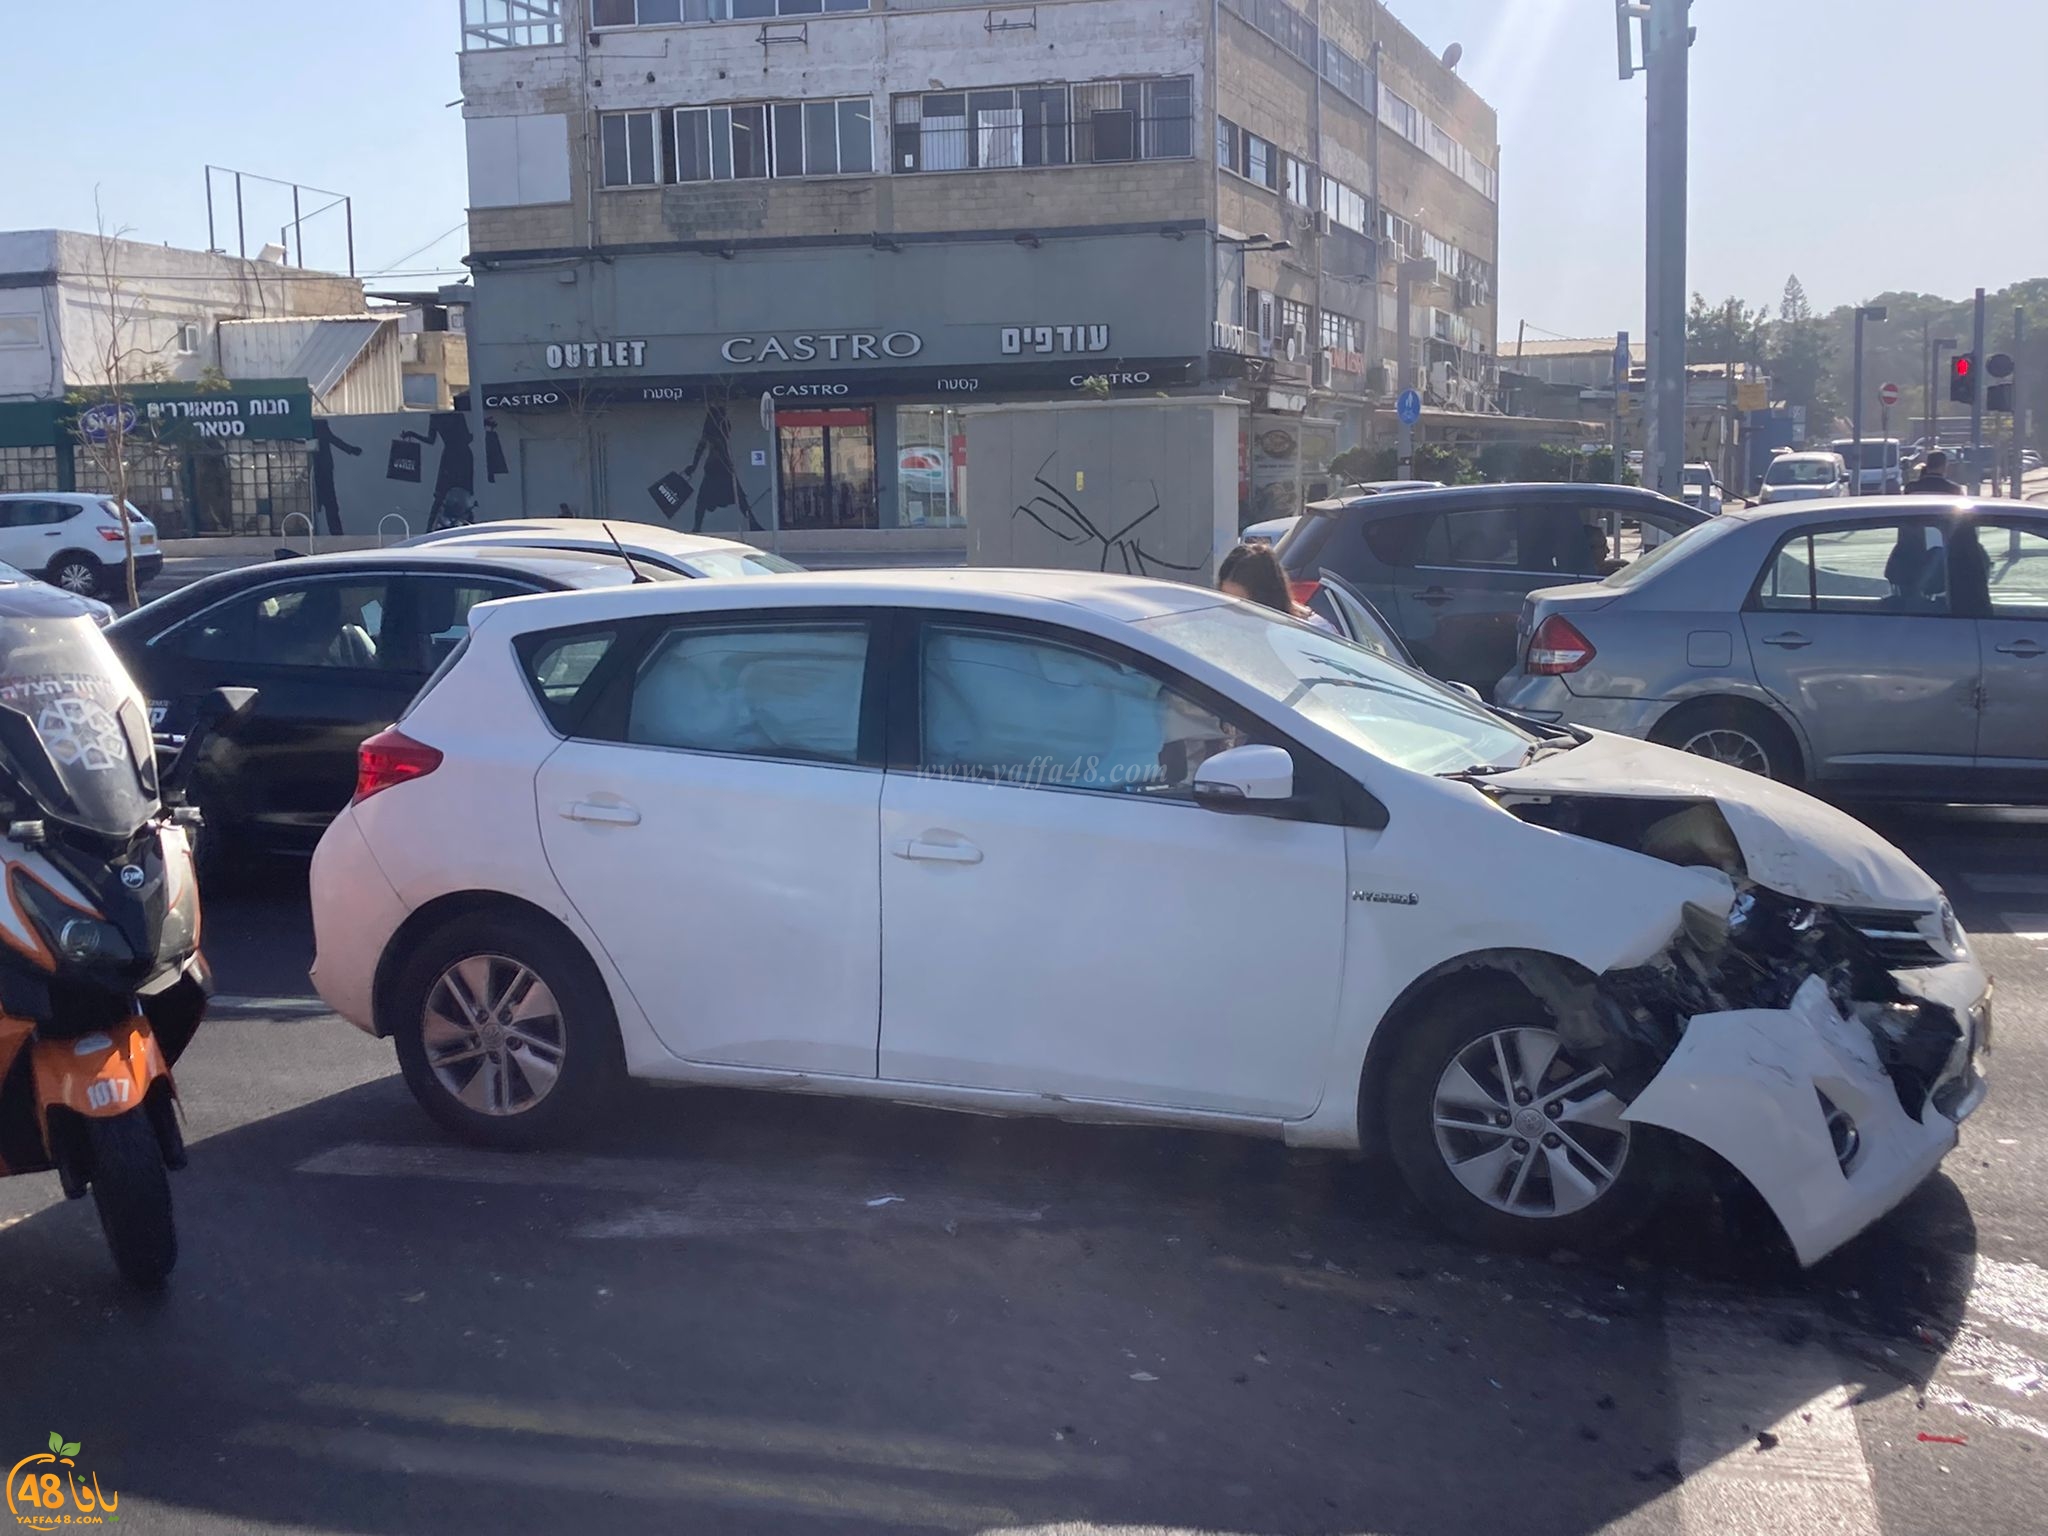  يافا: اصابة طفيفة لشخصين بحادث طرق بين مركبتين 